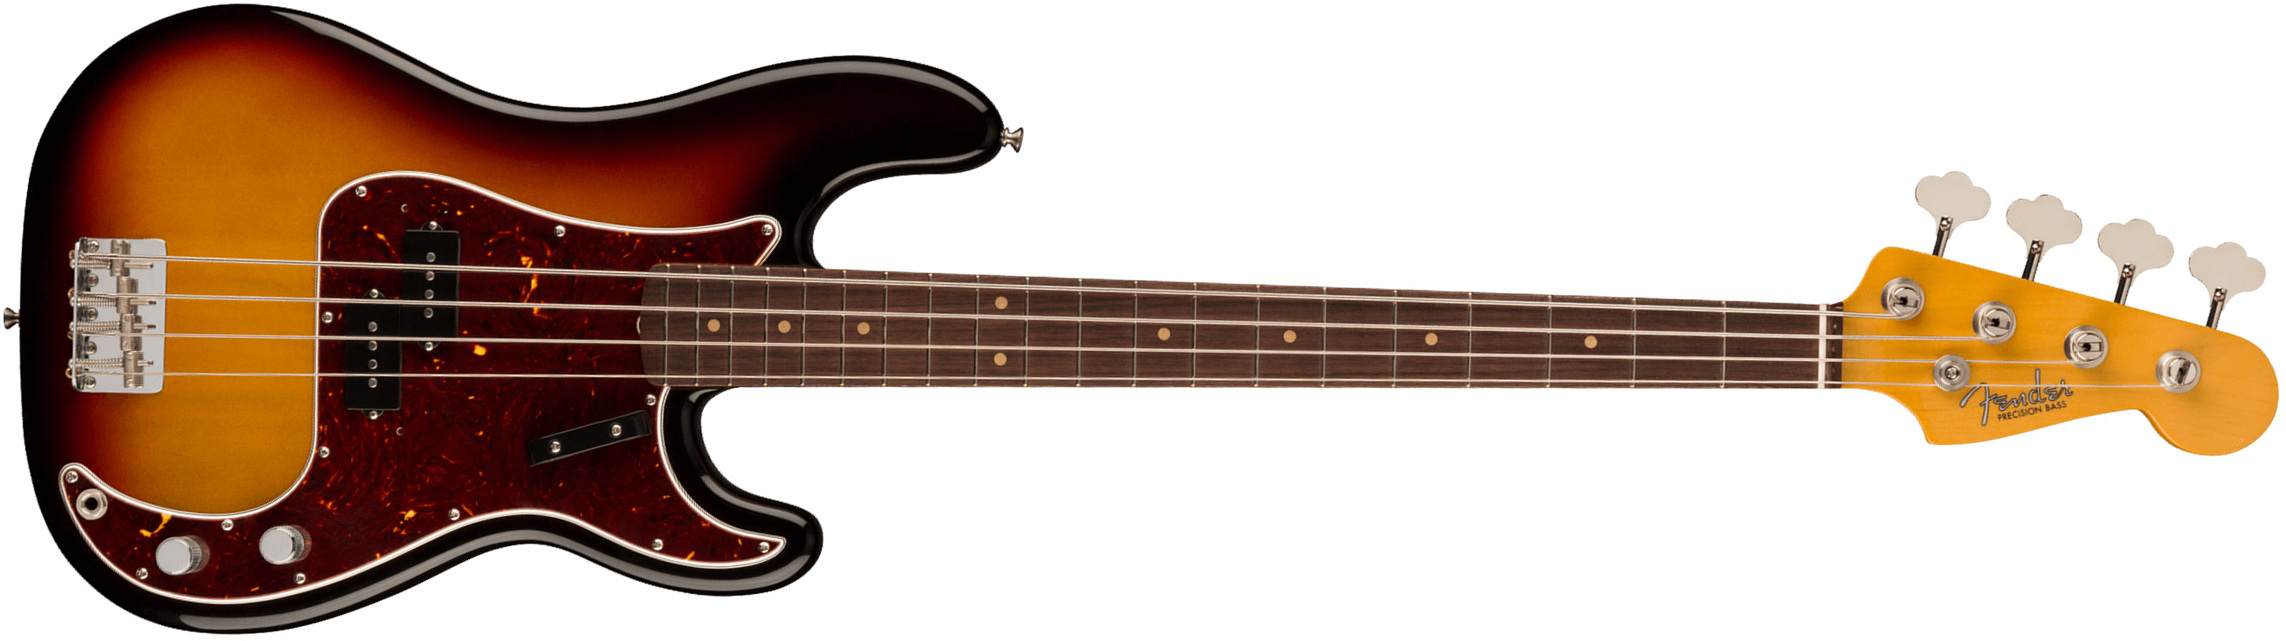 Fender Precision Bass 1960 American Vintage Ii Usa Rw - 3-color Sunburst - Bajo eléctrico de cuerpo sólido - Main picture